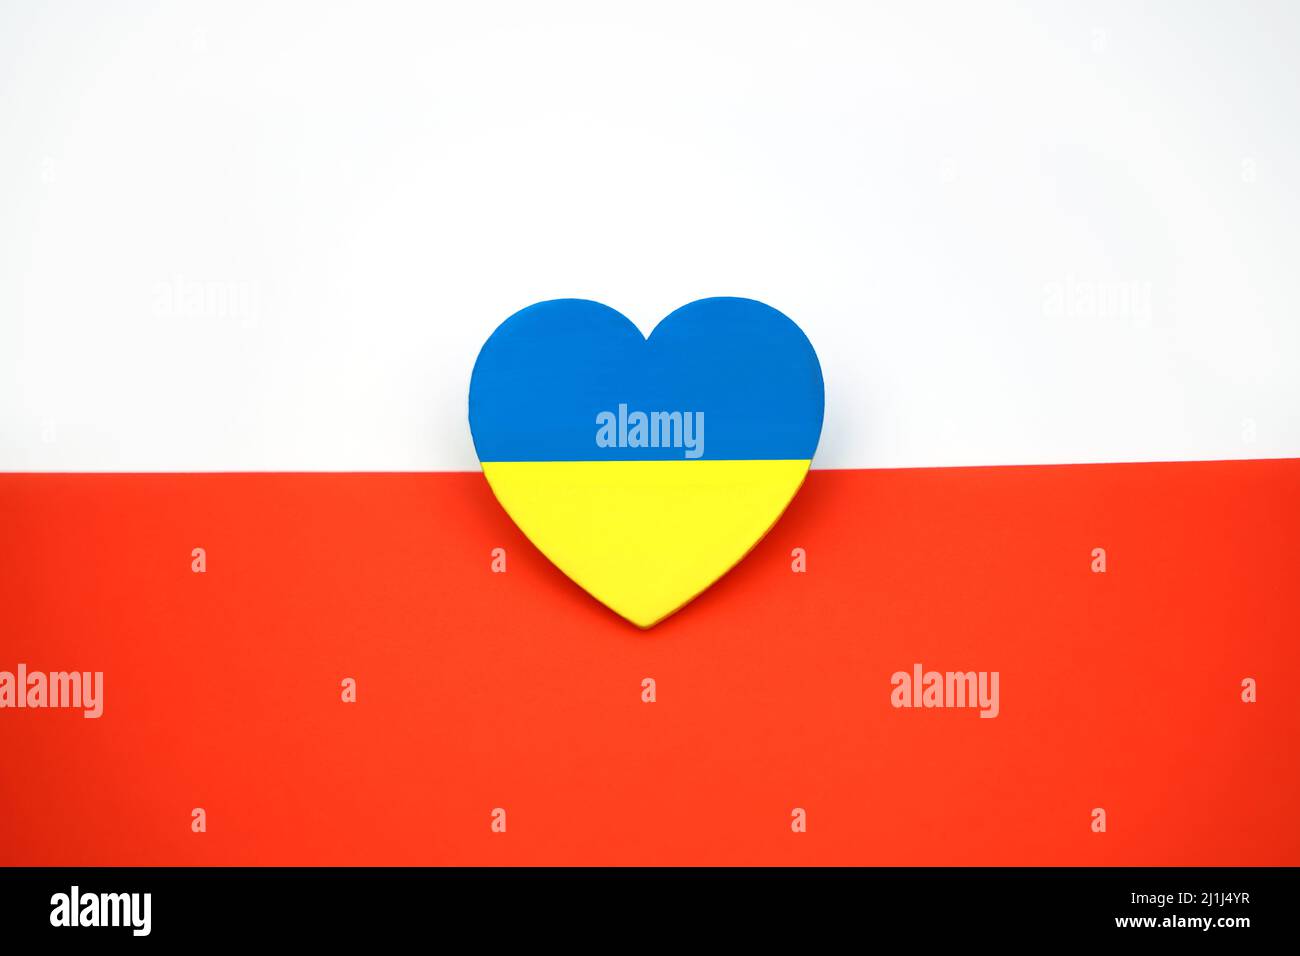 Die Flagge der Ukraine in Form des Herzens auf dem Hintergrund der Flagge Polens. Symbol der Solidarität und Unterstützung. Brüderliche Liebe Stockfoto